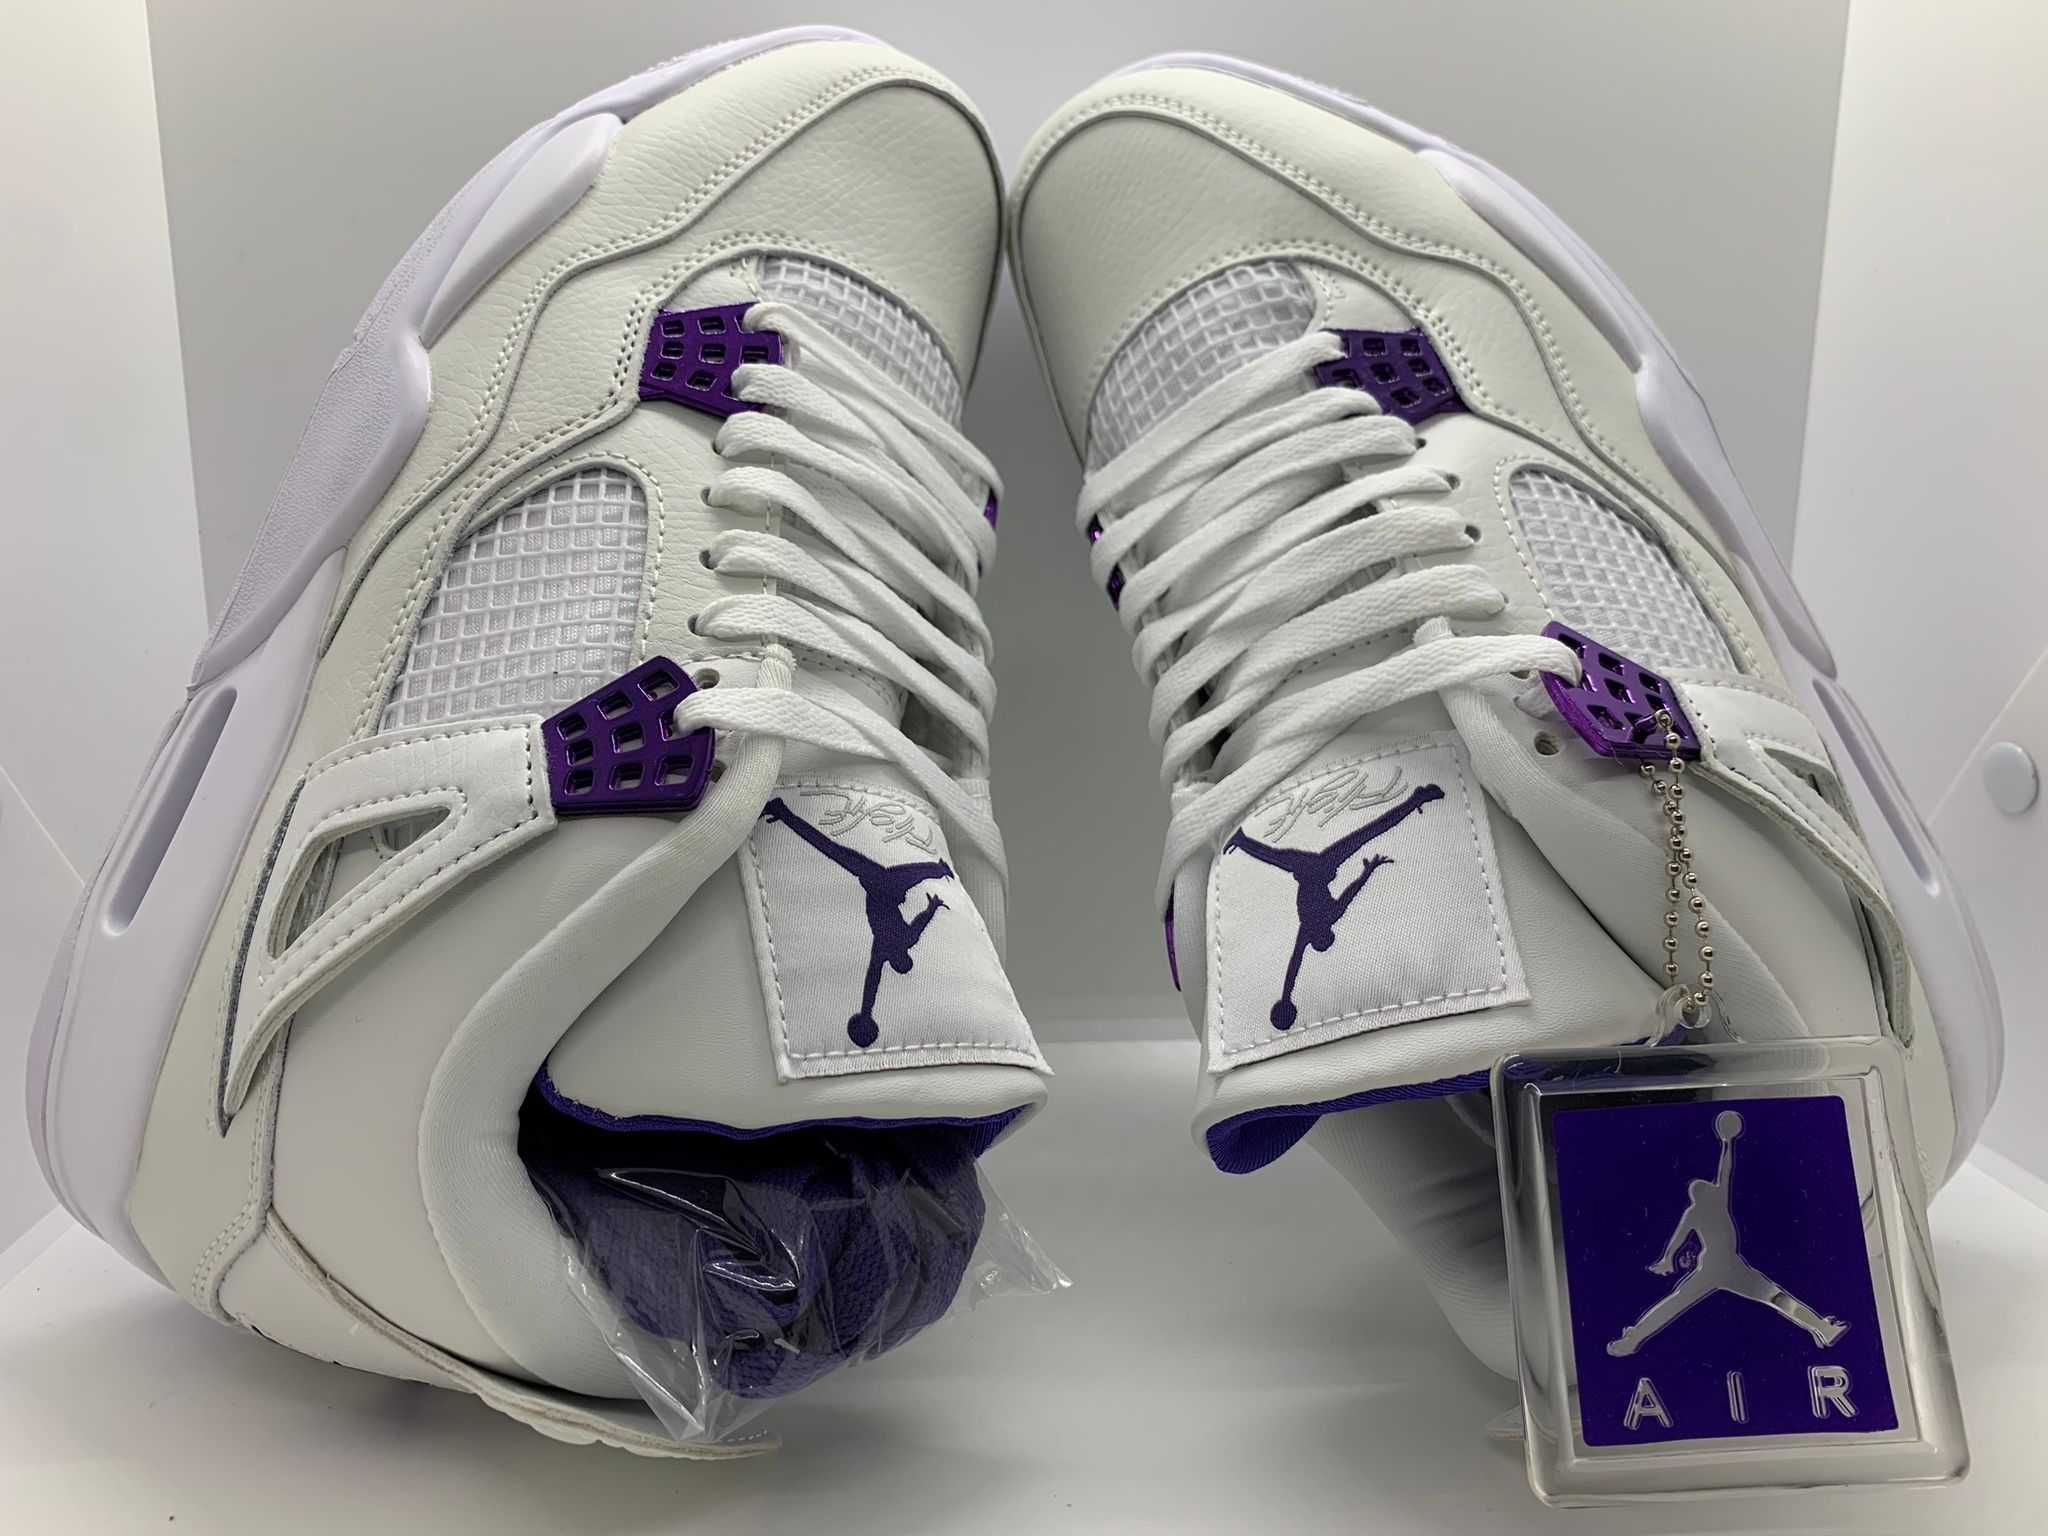 Air Jordan 4 Retro "Metallic Pack - Purple" sneakers